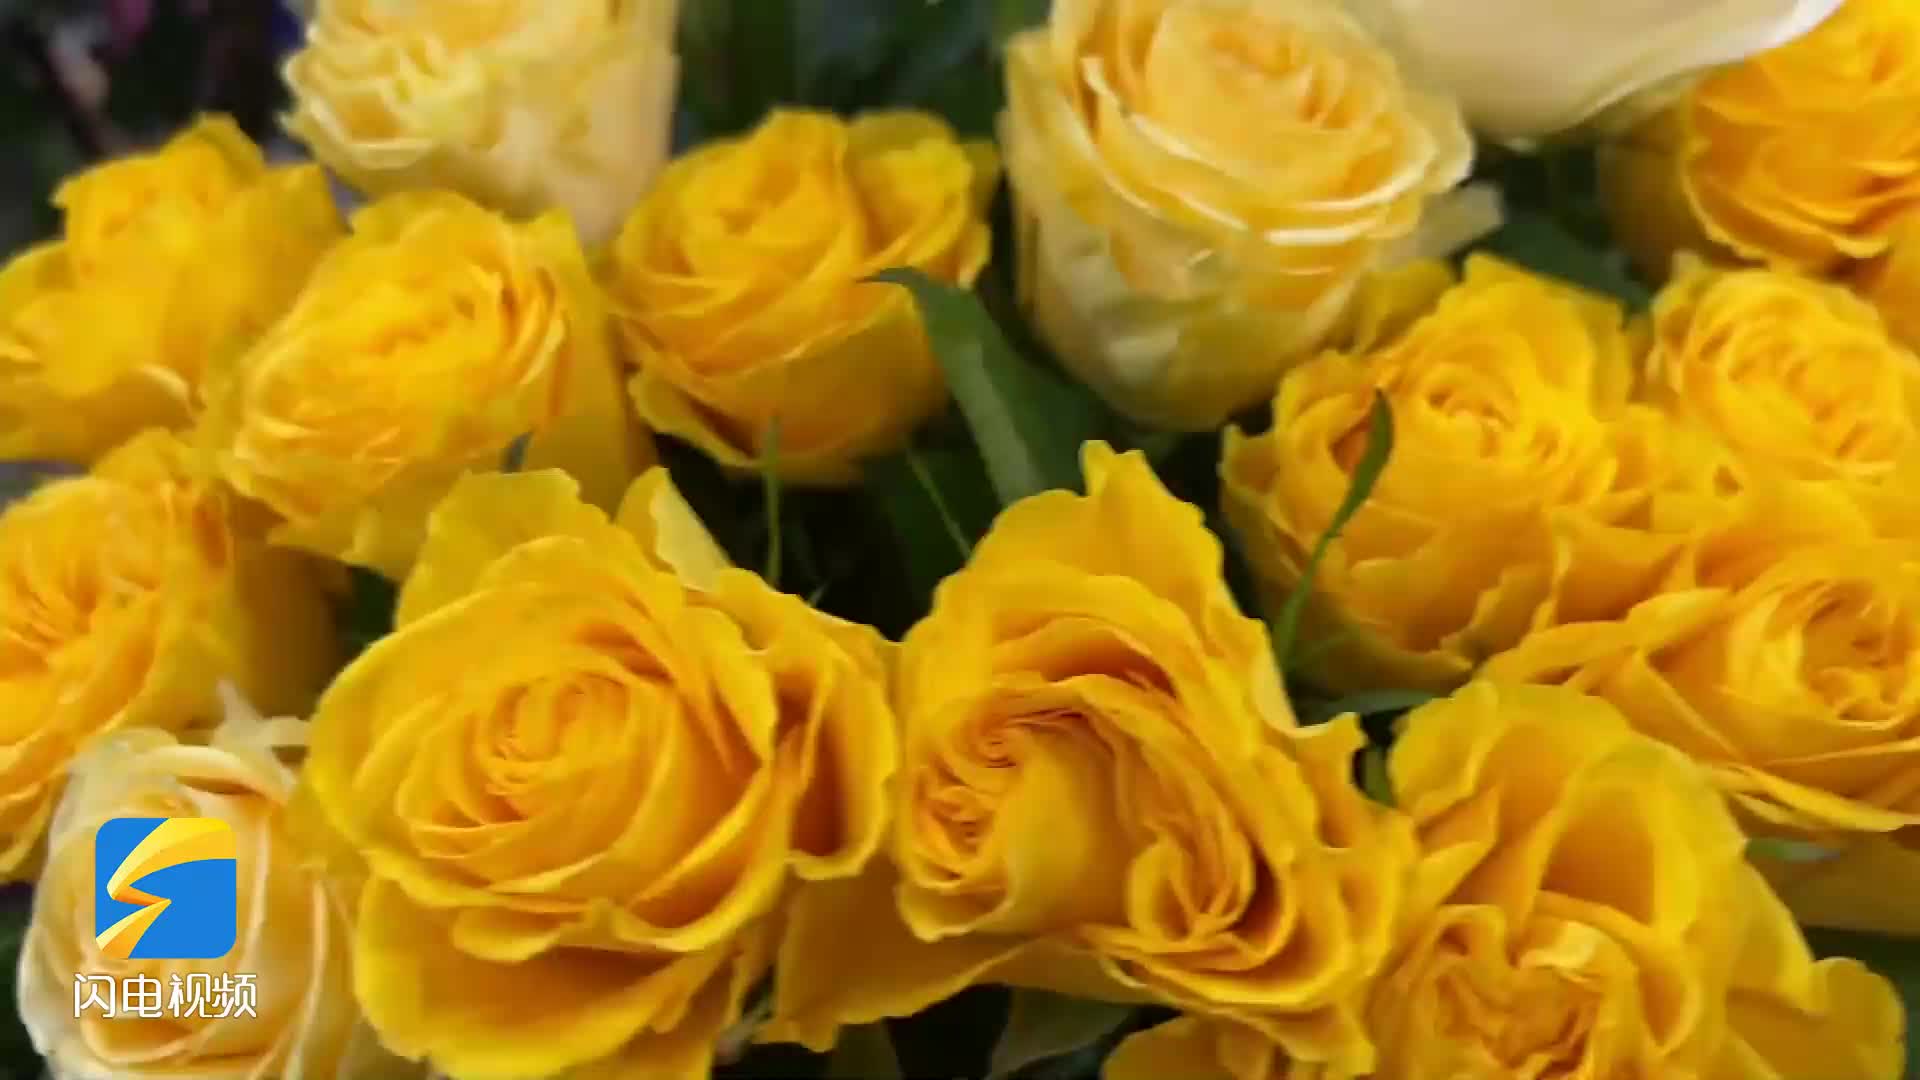 红玫瑰、郁金香、小雏菊......闪电新闻记者探访花卉市场